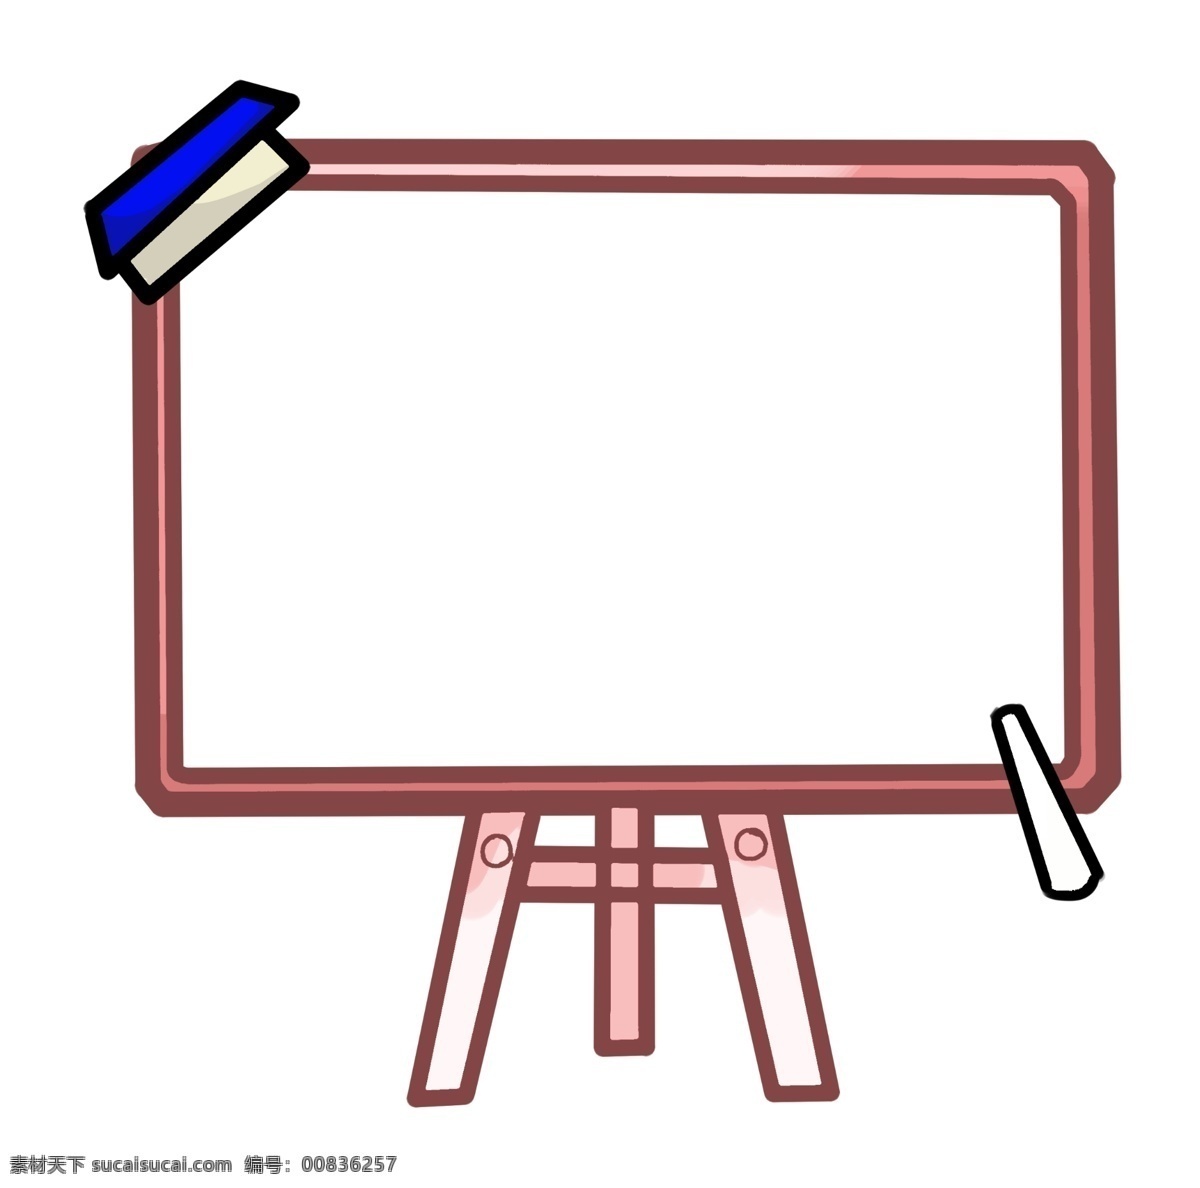 粉笔 黑板擦 边框 插图 黑板边框 长方形 插画 黑板擦边框 手绘 手绘边框 卡通 卡通边框